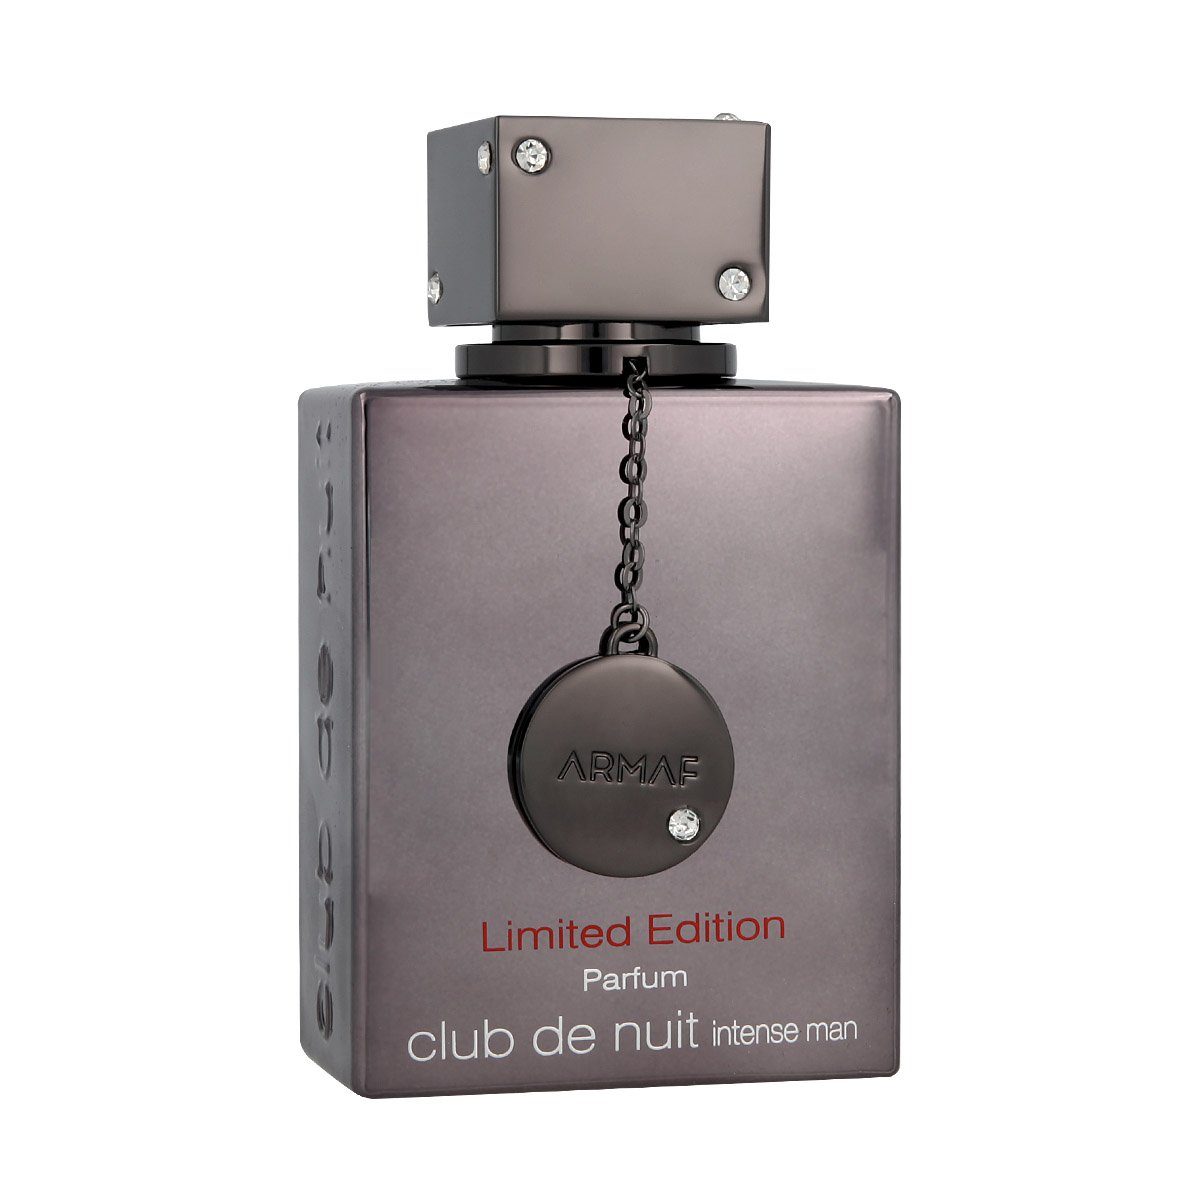 Nuit Intense Club Edition Parfum armaf de Man Parfum Limited de Eau